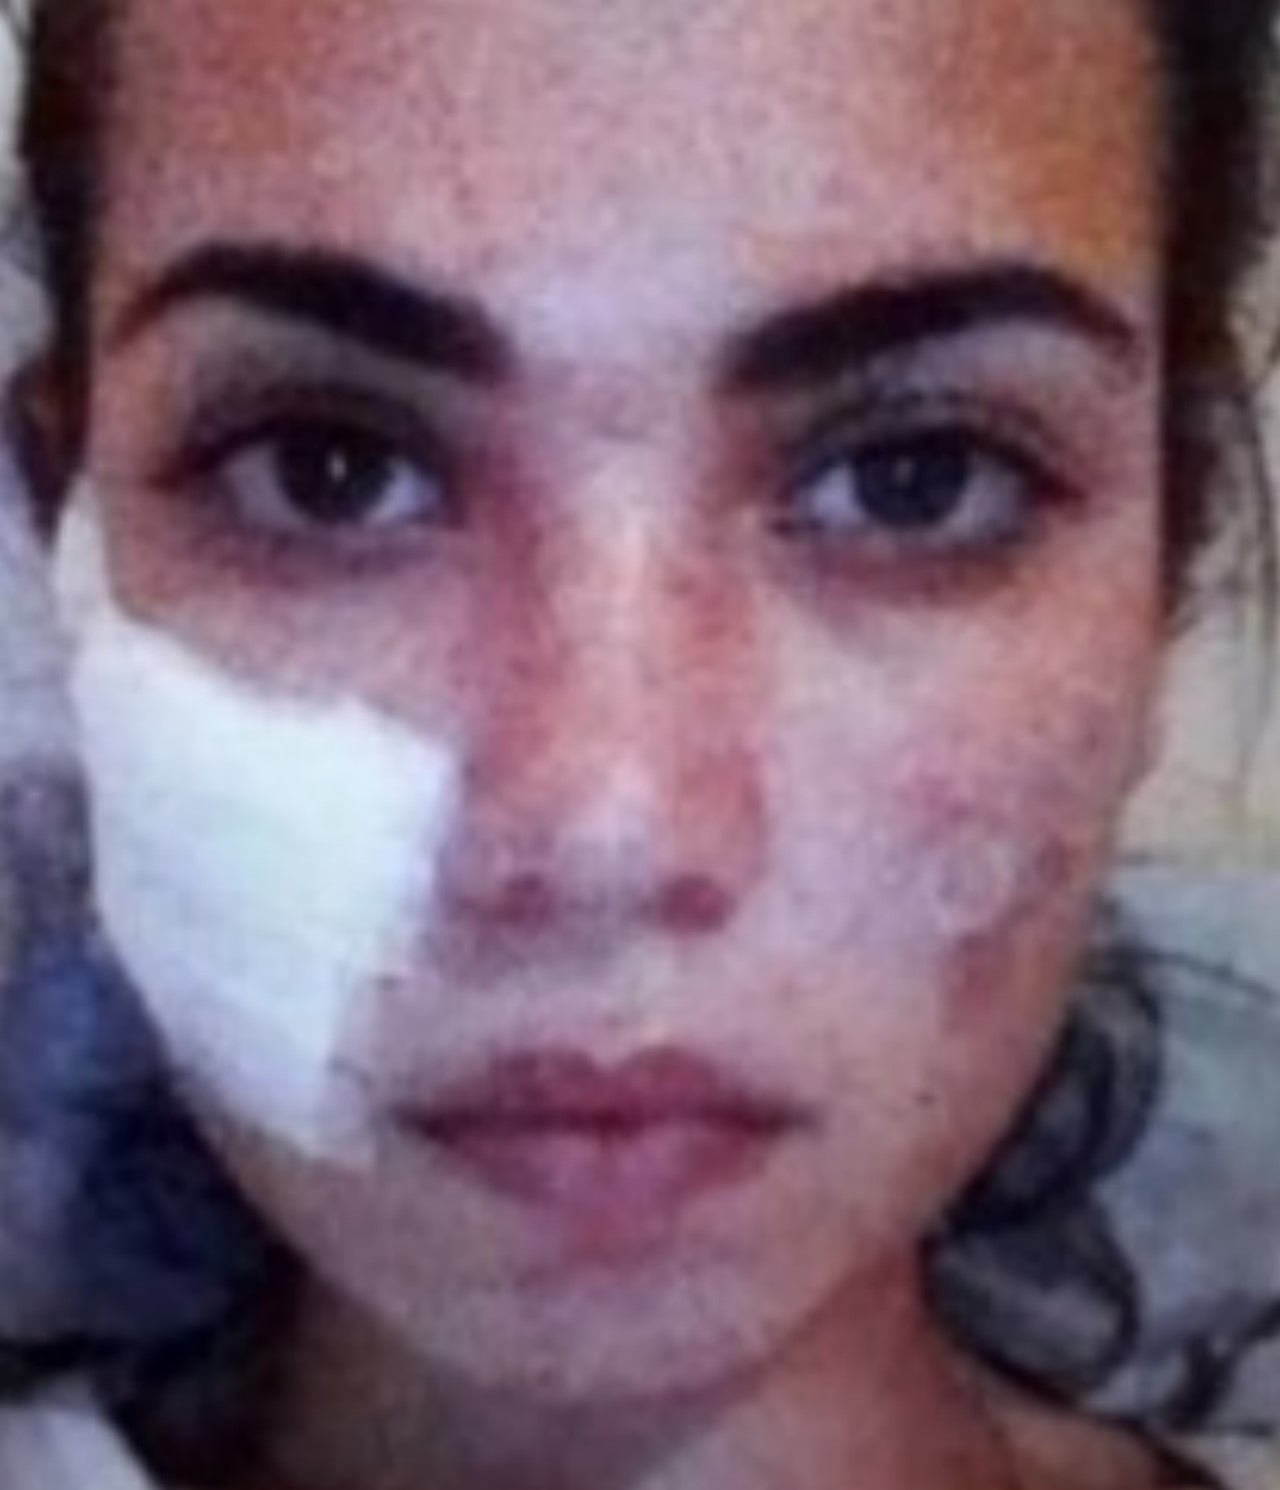 Miss Universo mostro como se le desfiguro el rostro tras una cirugia2